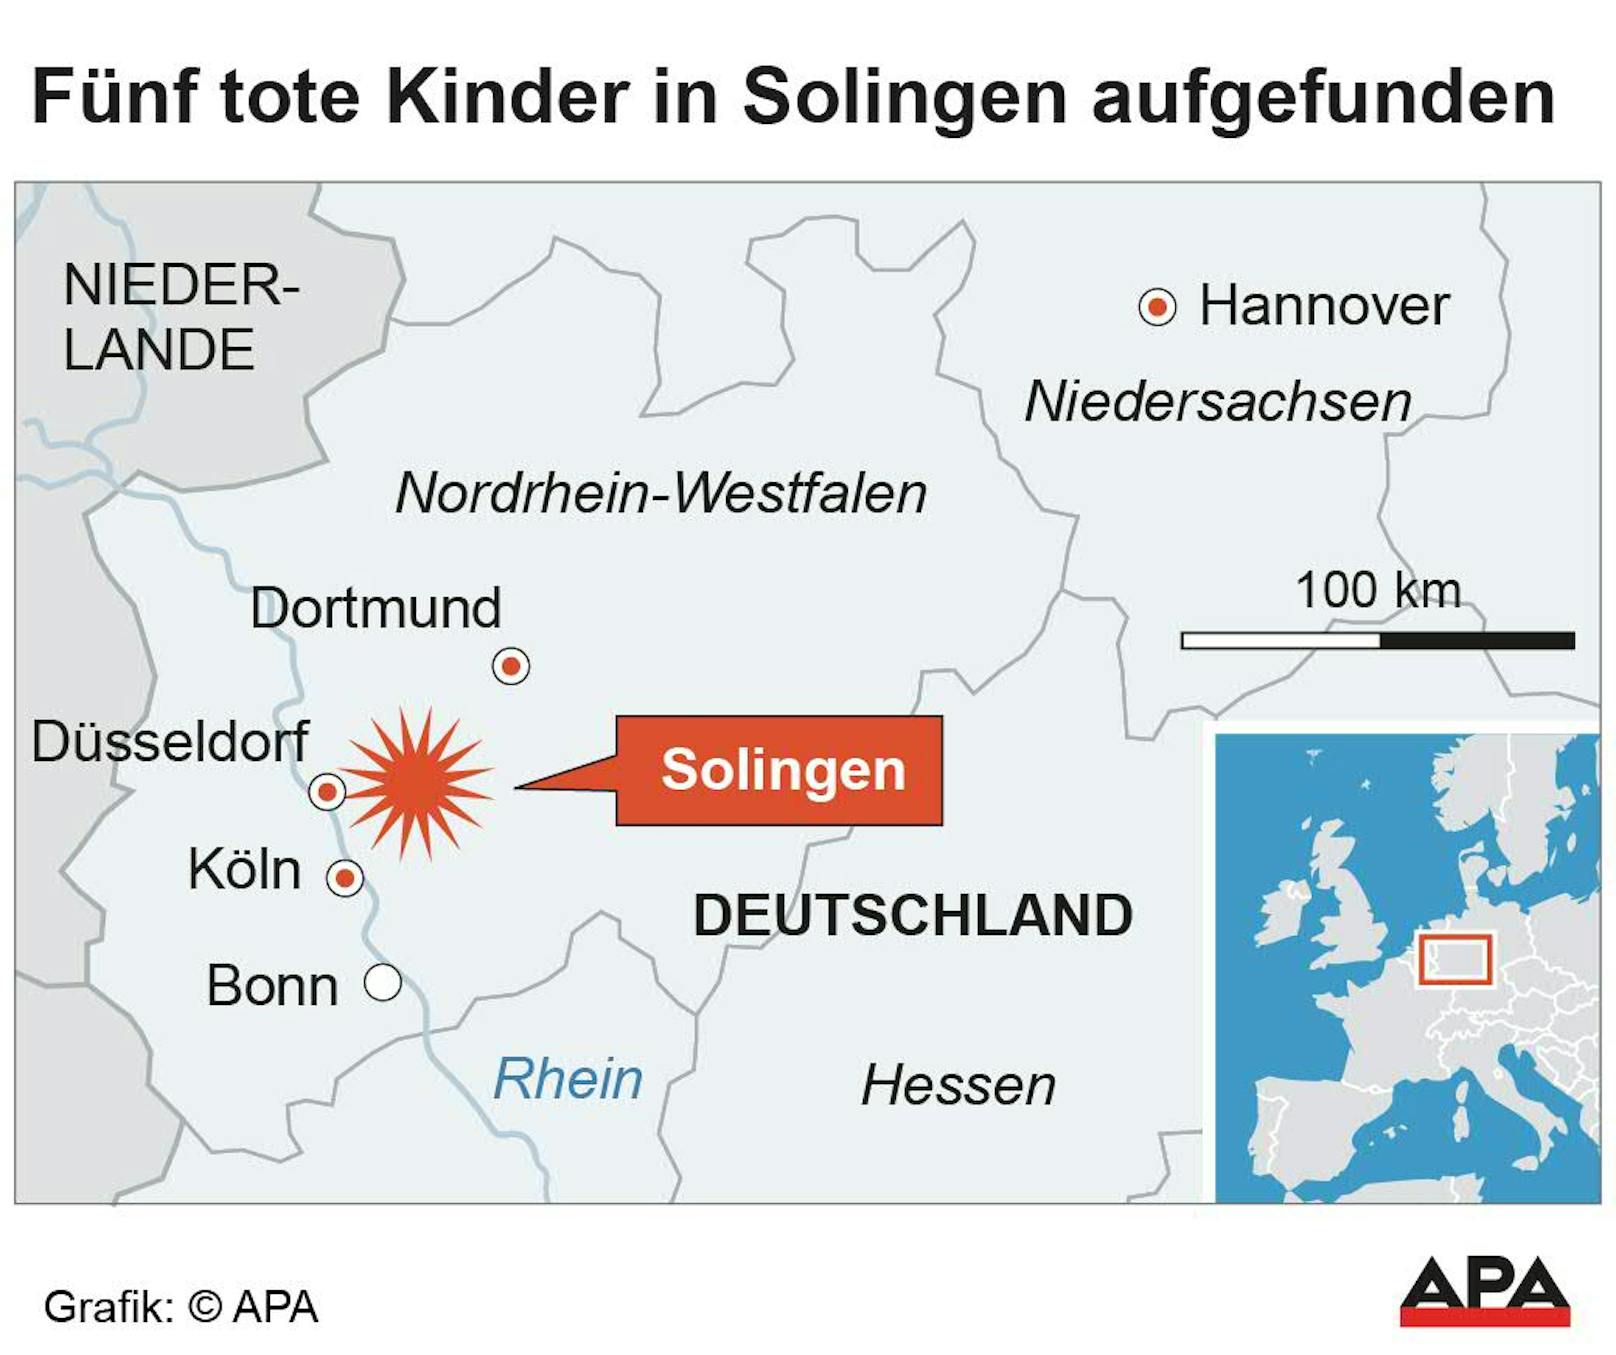 Ersten Informationen zufolge wurden die toten Kinder in einem Mehrfamilienhaus in Solingen entdeckt.